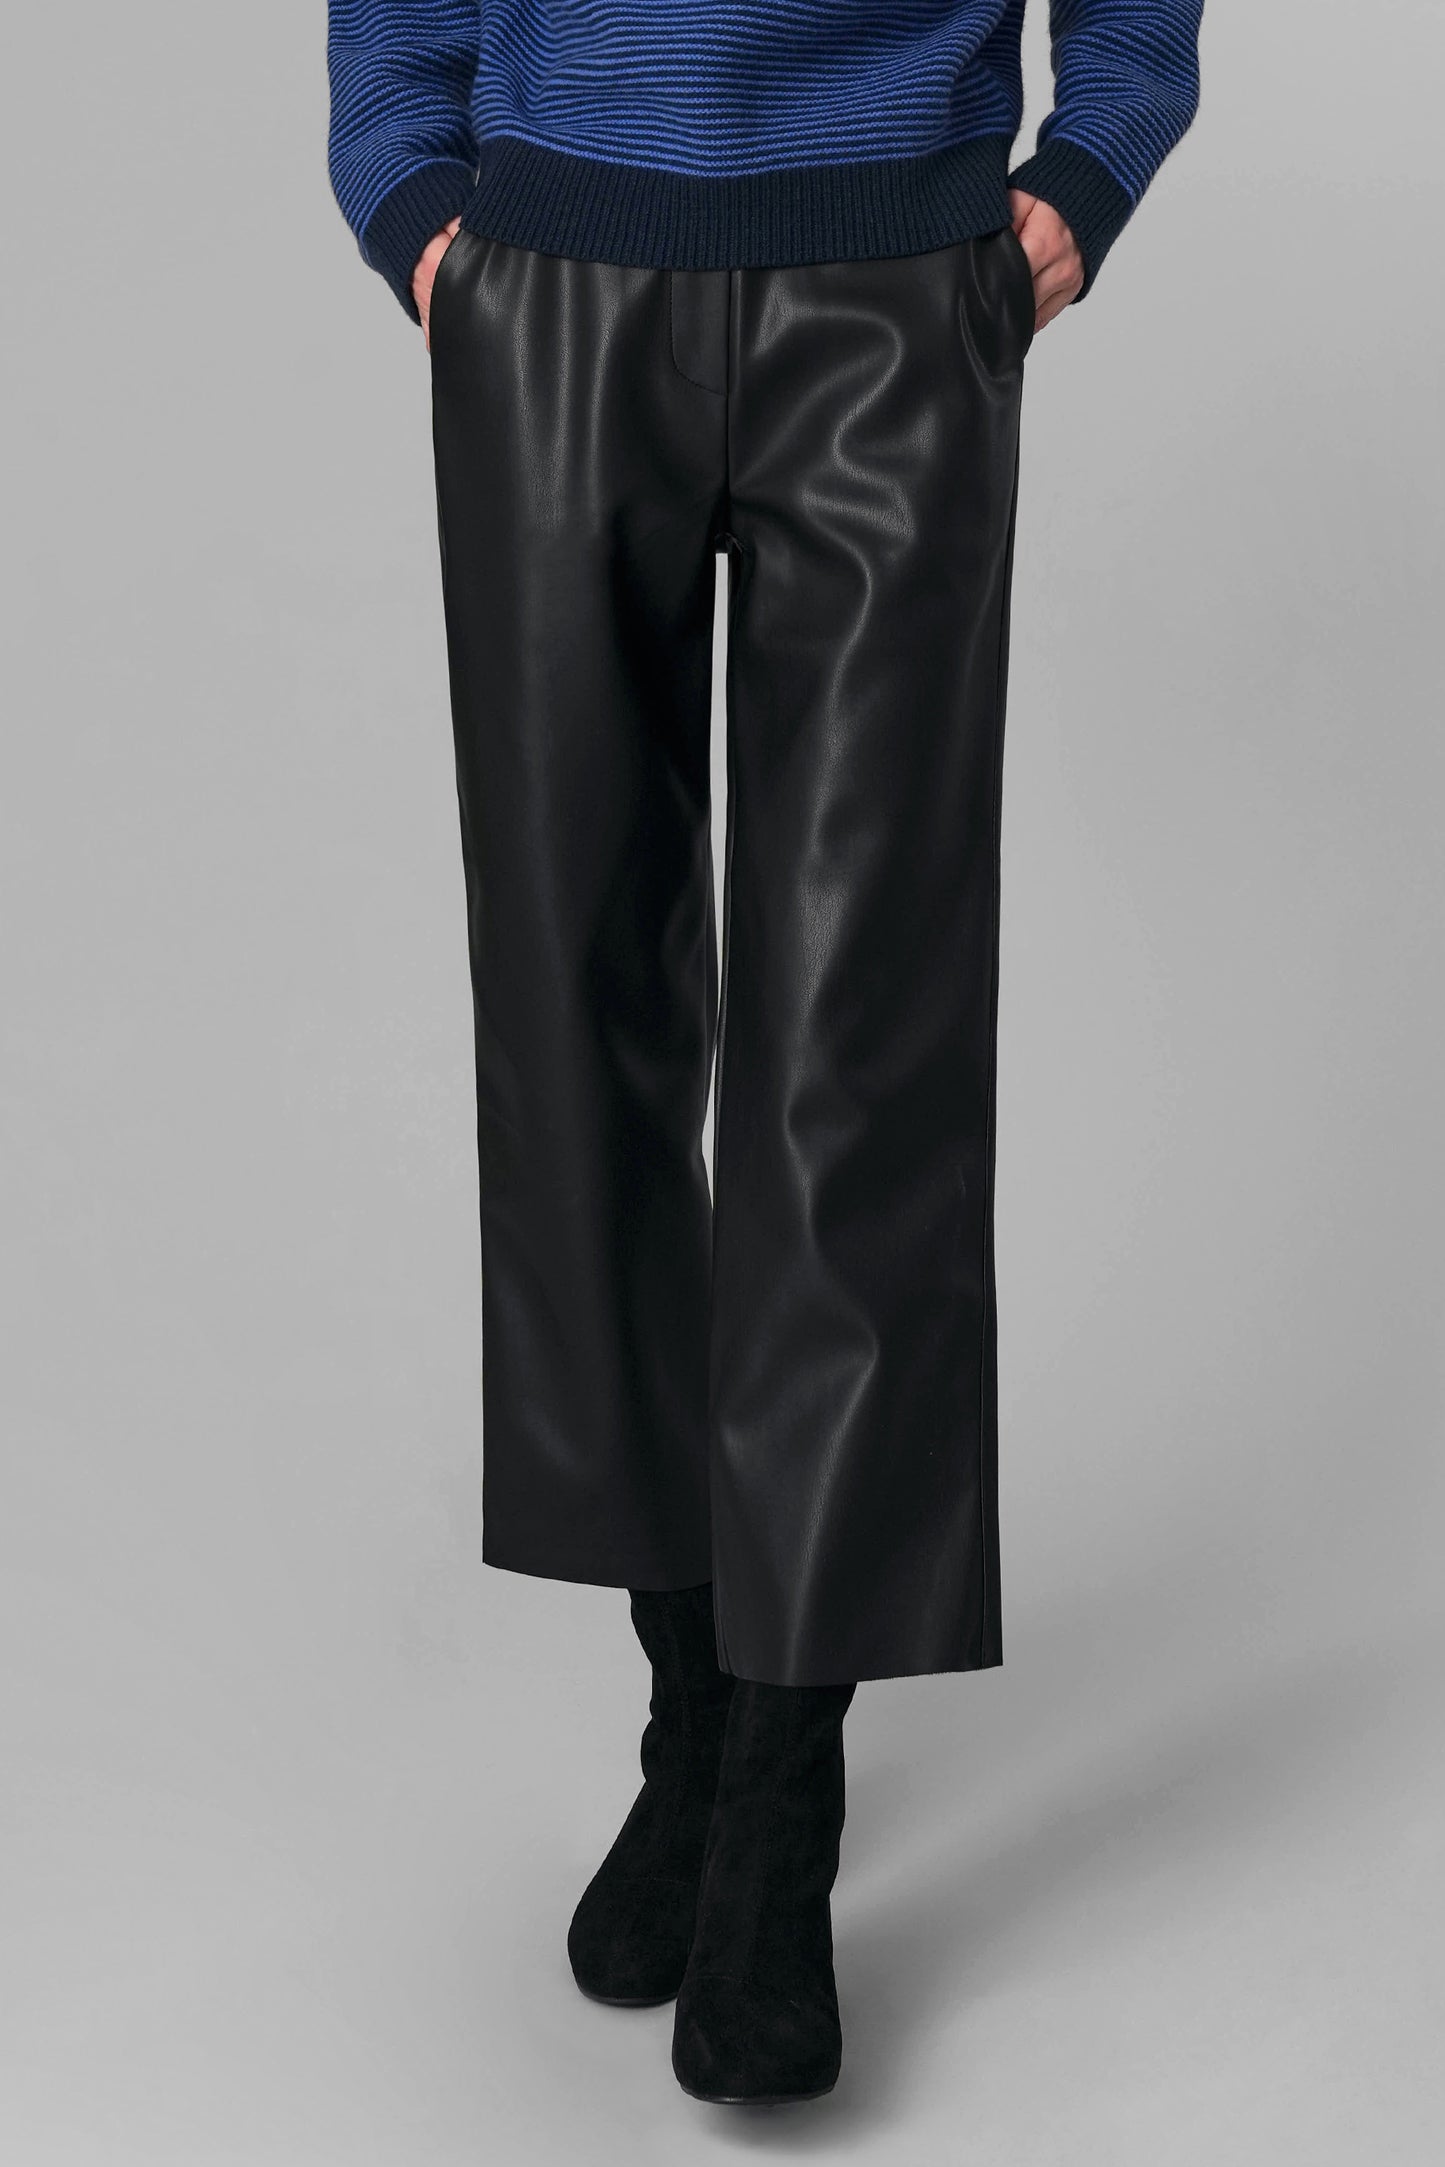 nicole-faux-leather-pants-black